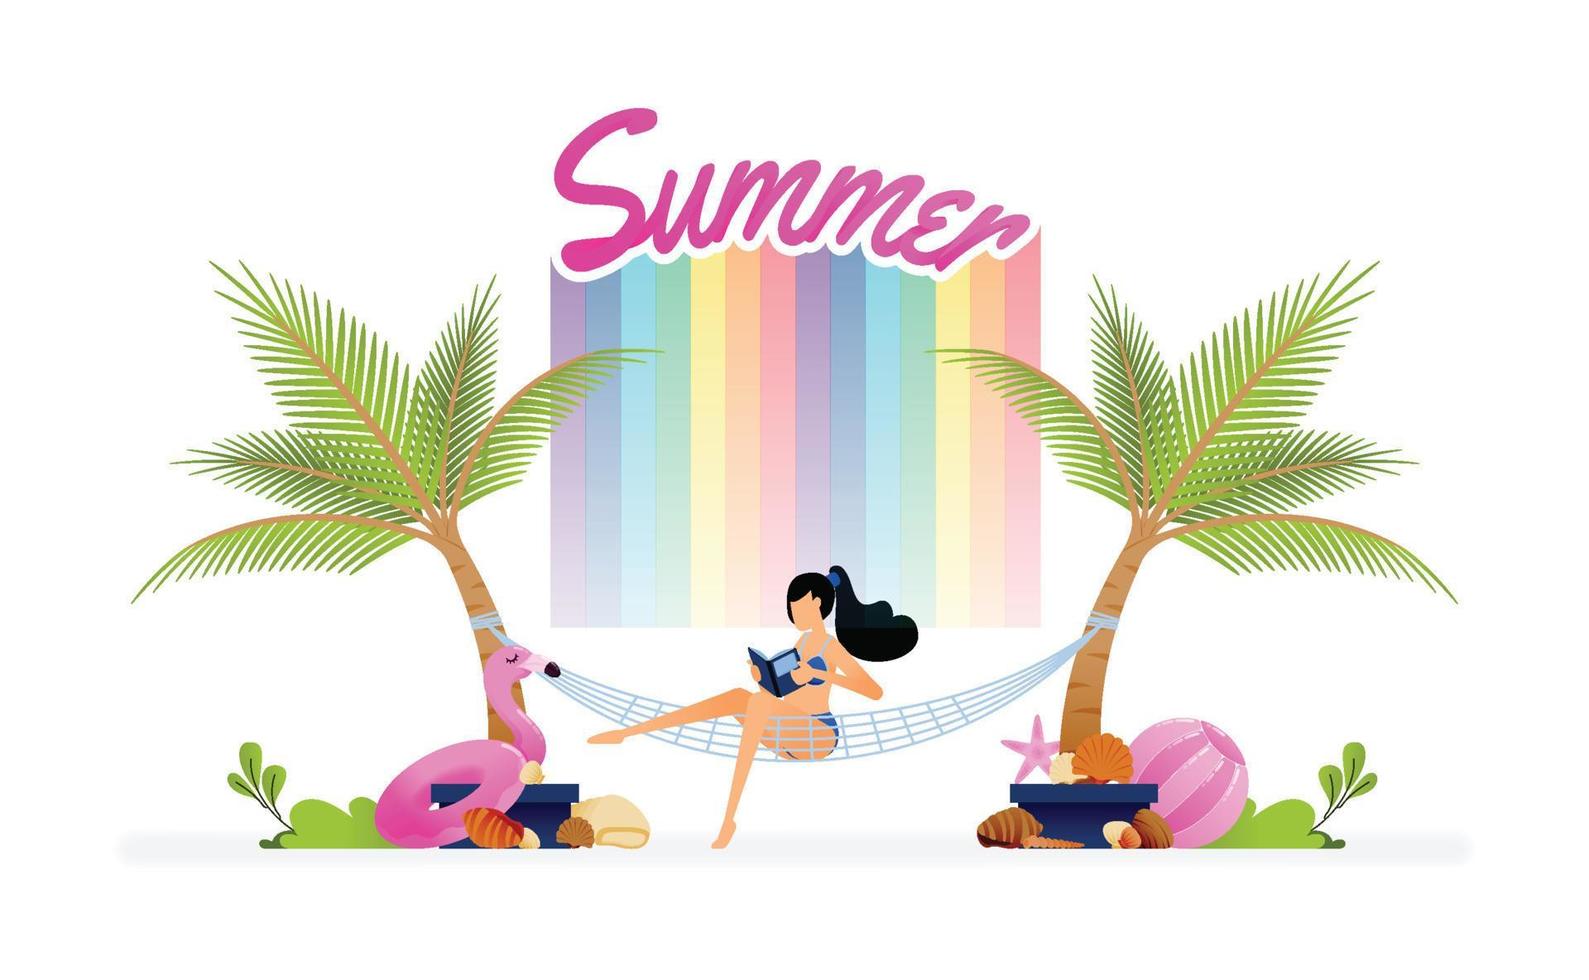 vektorillustration av flickan som sitter avslappnad i en hängmatta bunden mellan kokospalmer på stranden på semestern. design kan användas till målsida, webb, webbplats, affisch, mobilappar, broschyrannonser, flygblad vektor